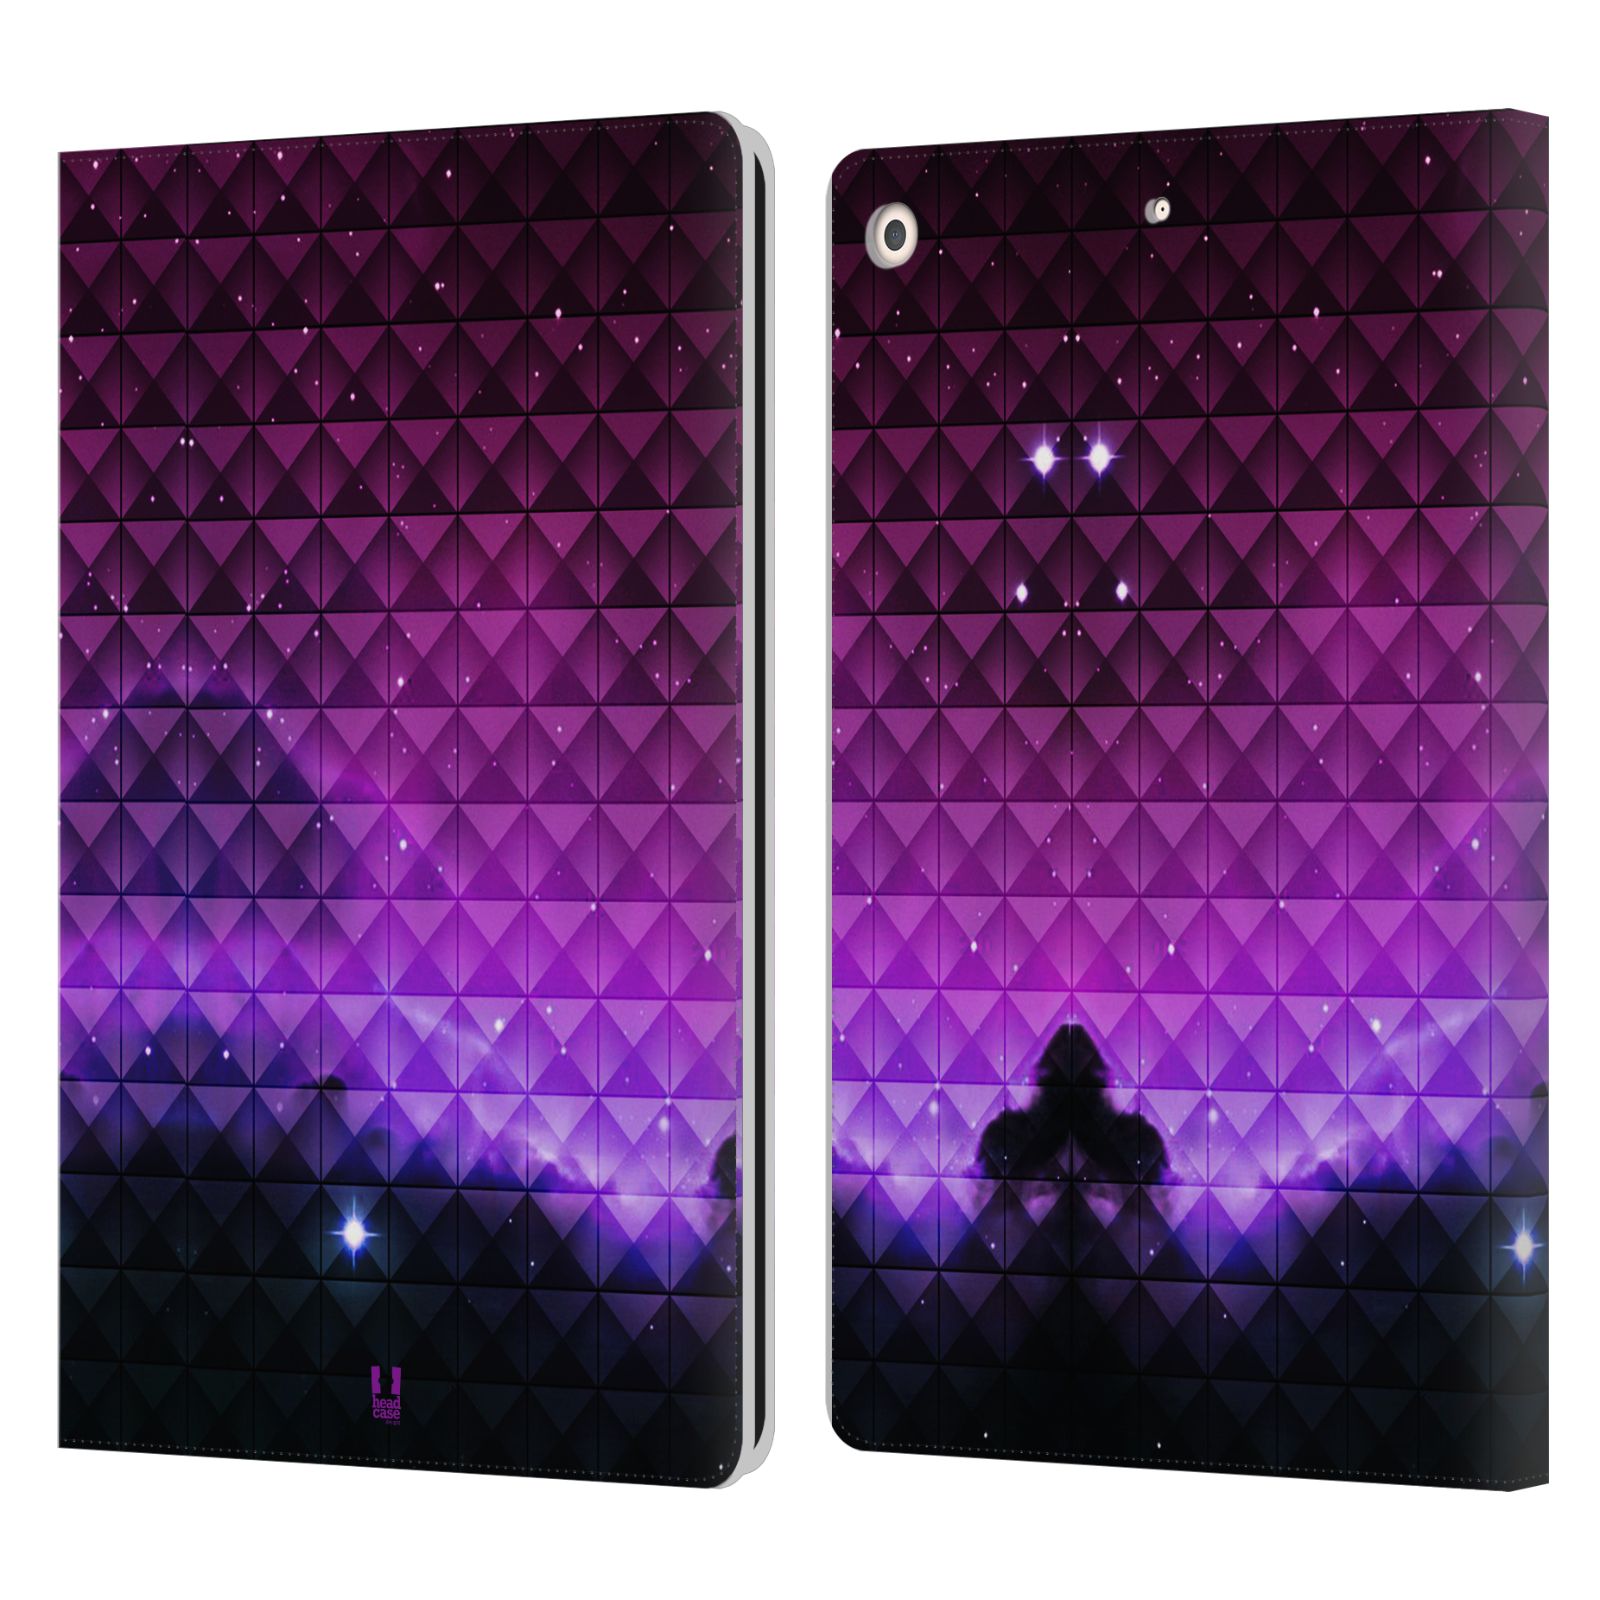 Pouzdro pro tablet Apple Ipad 10.2 - HEAD CASE - barevná vesmírná mlhovina fialová a černá